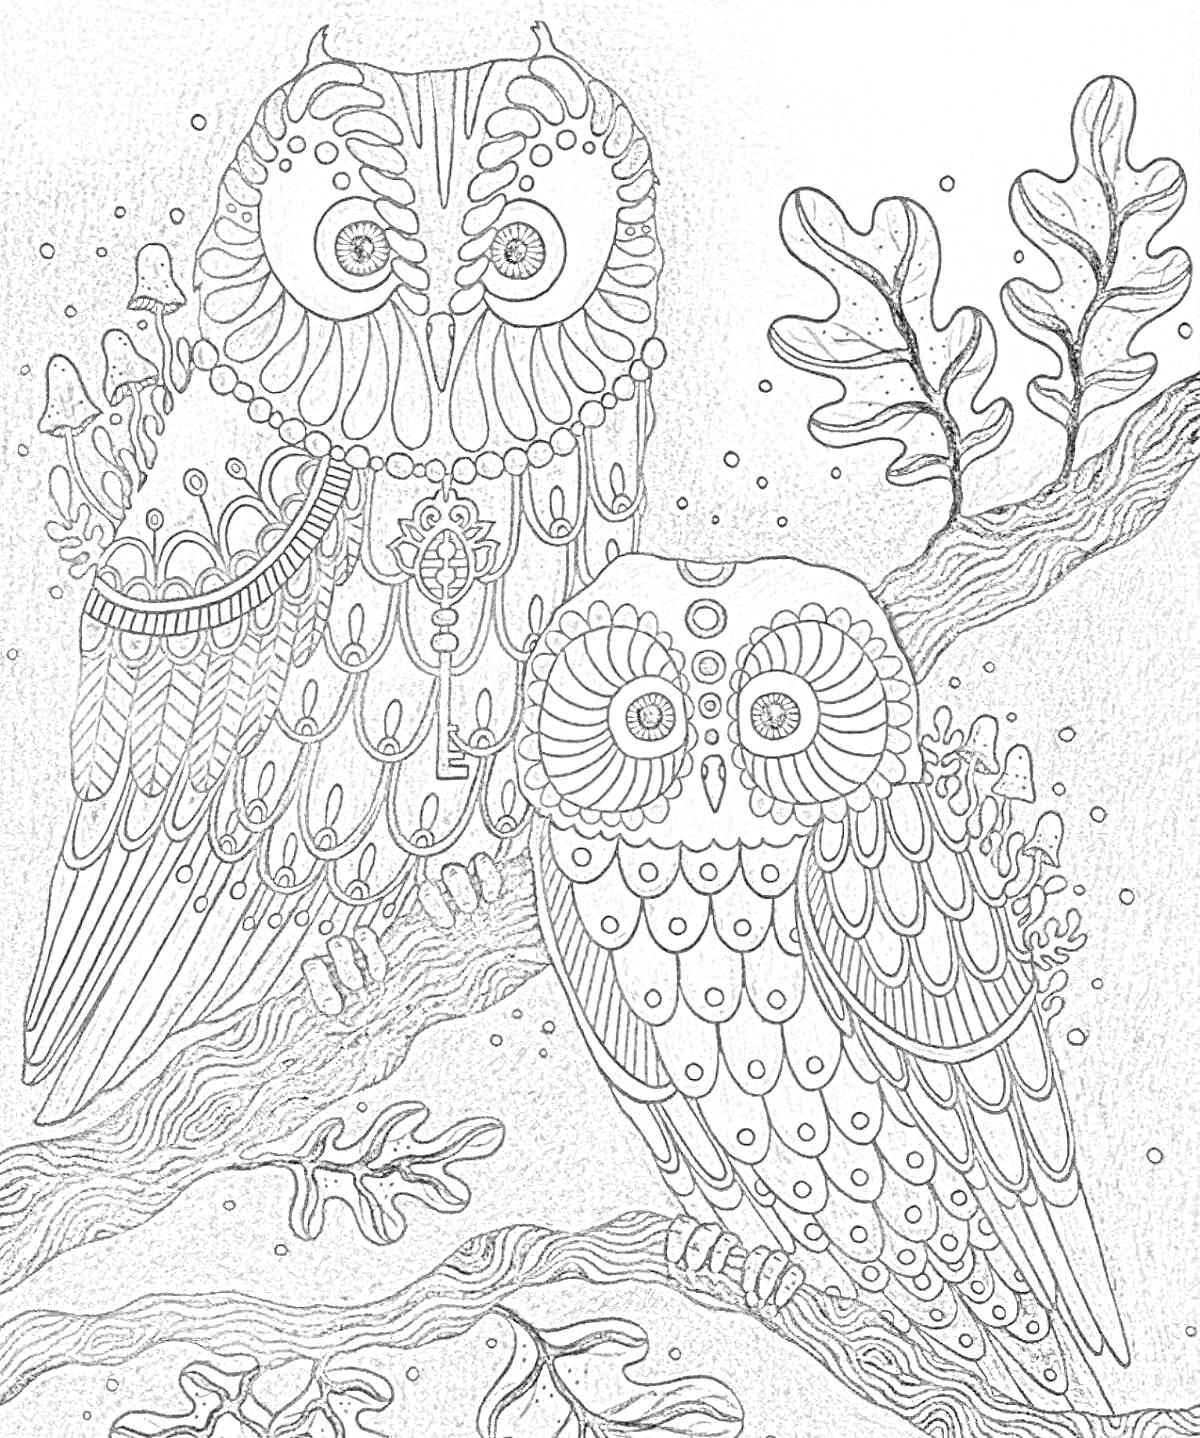 Раскраска Две украшенные совы на ветке с листьями на фоне ночного неба